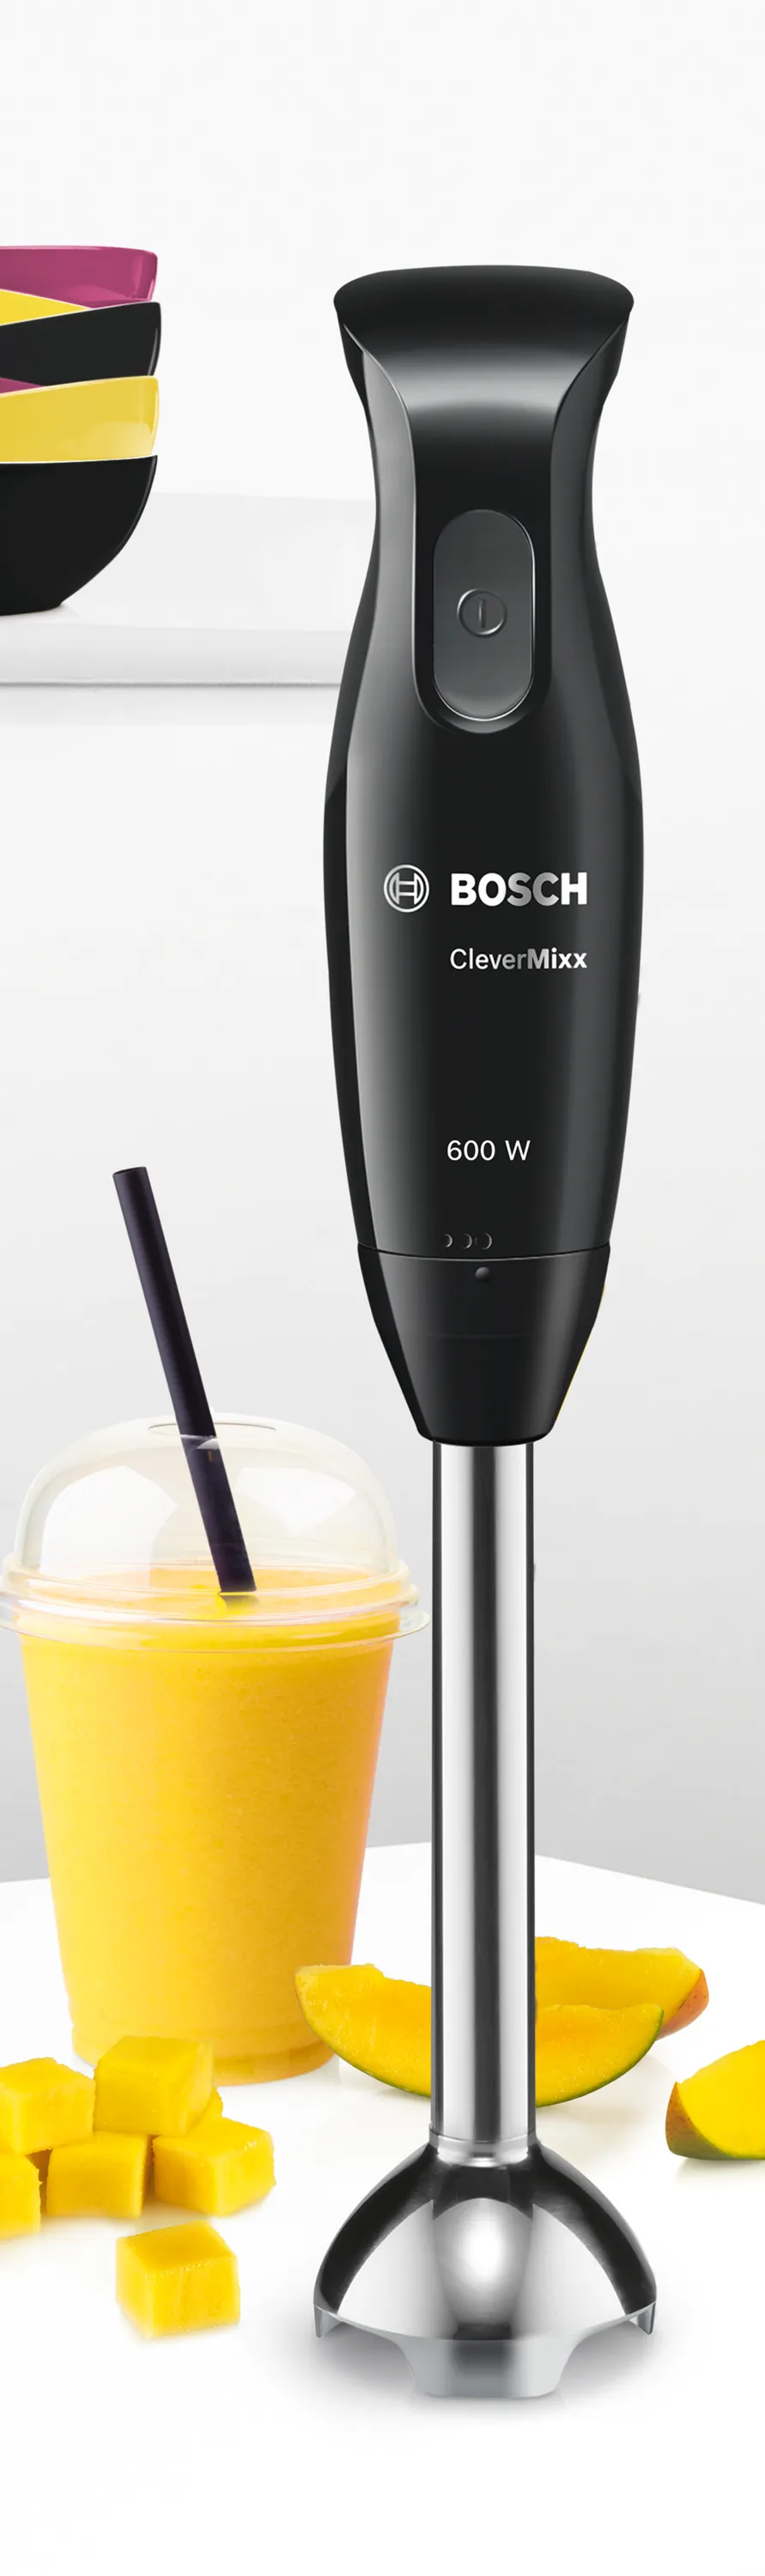 Bosch 600W CleverMixx Hand Blender - Black